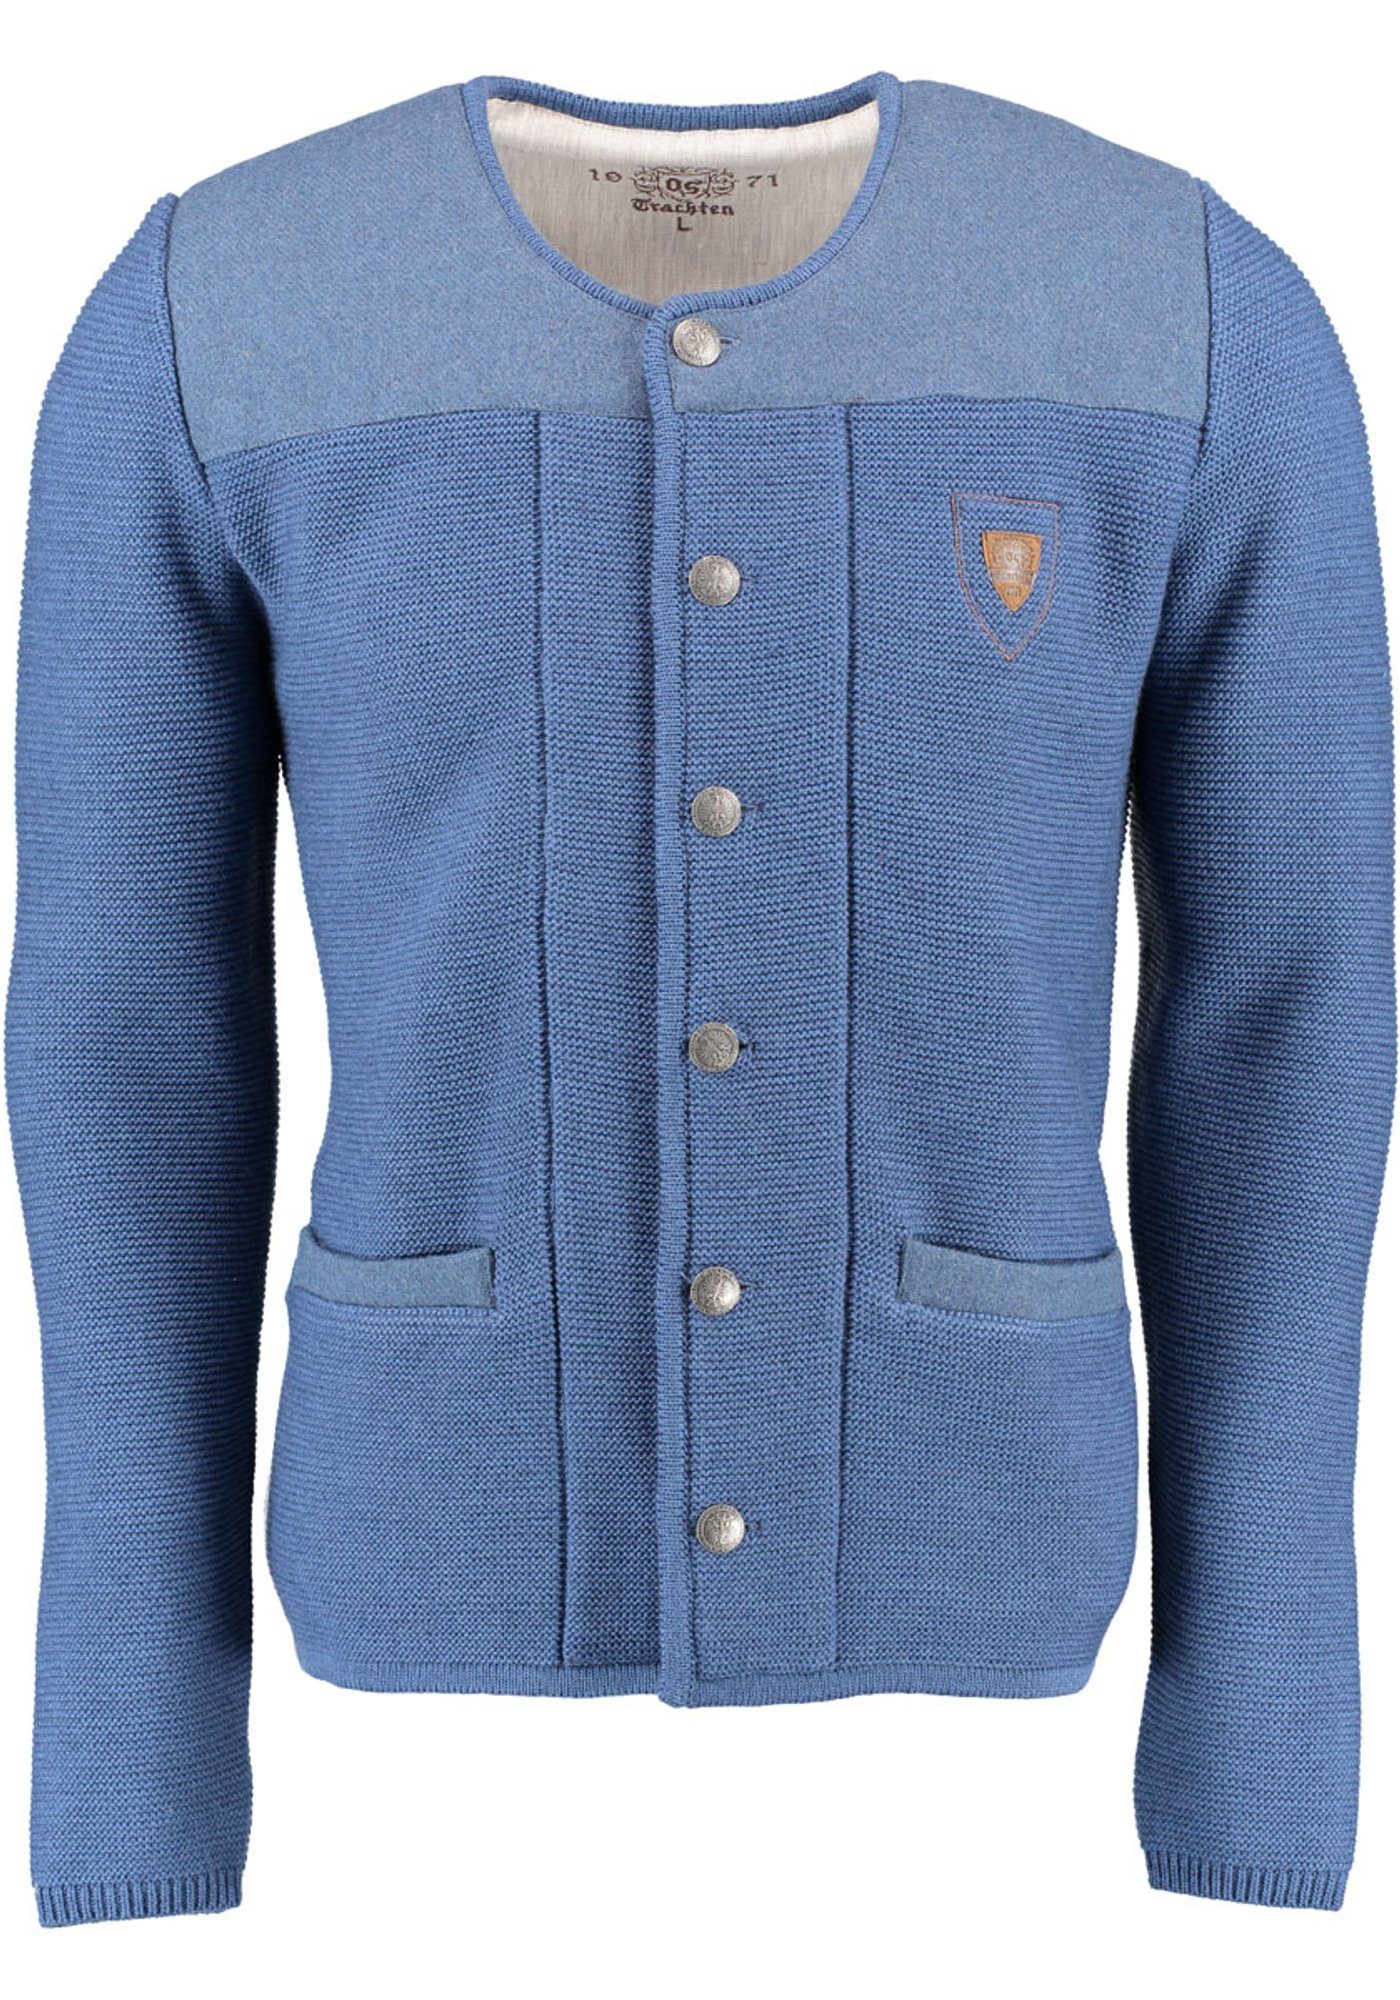 OS-Trachten Strickjacke Scava Trachten-Wolljacke mit Rundhalsausschnitt und Emblem auf der Brust jeans